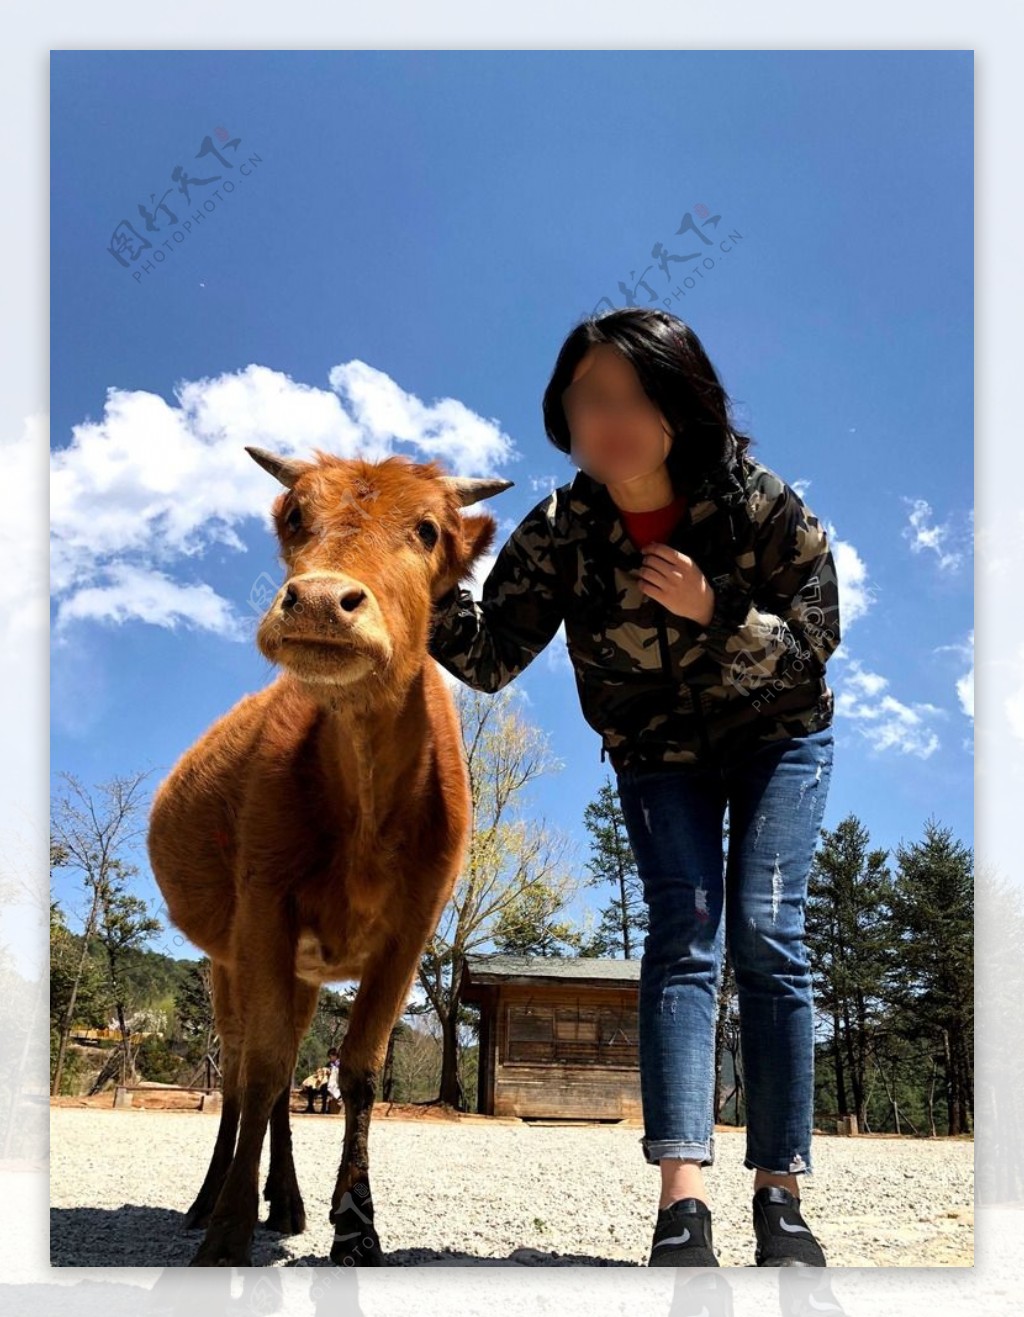 和小牛拍照的姑娘